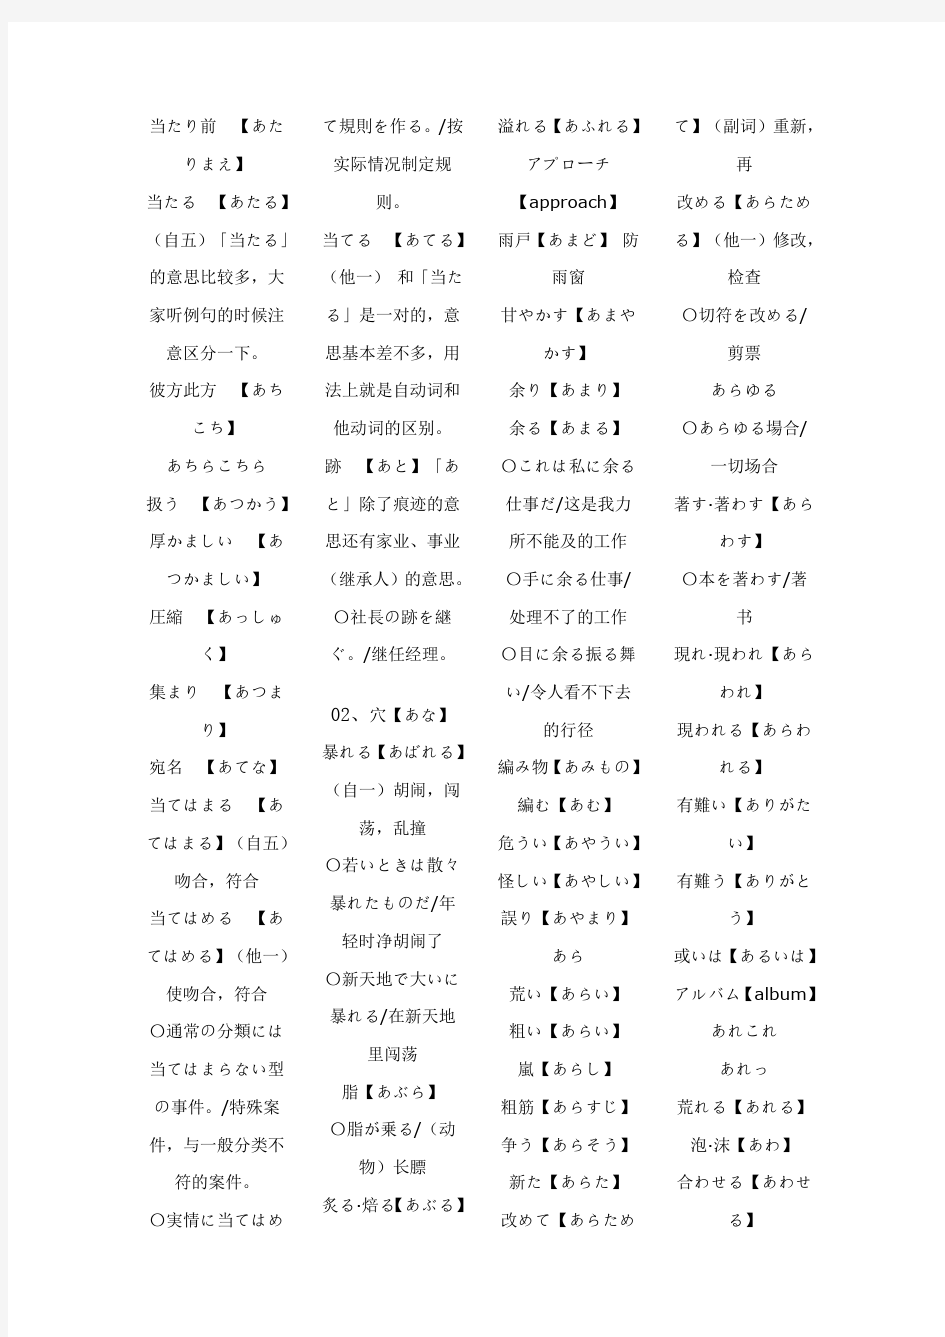 有声记忆日本语能力测试10000词(2级部分) pdf